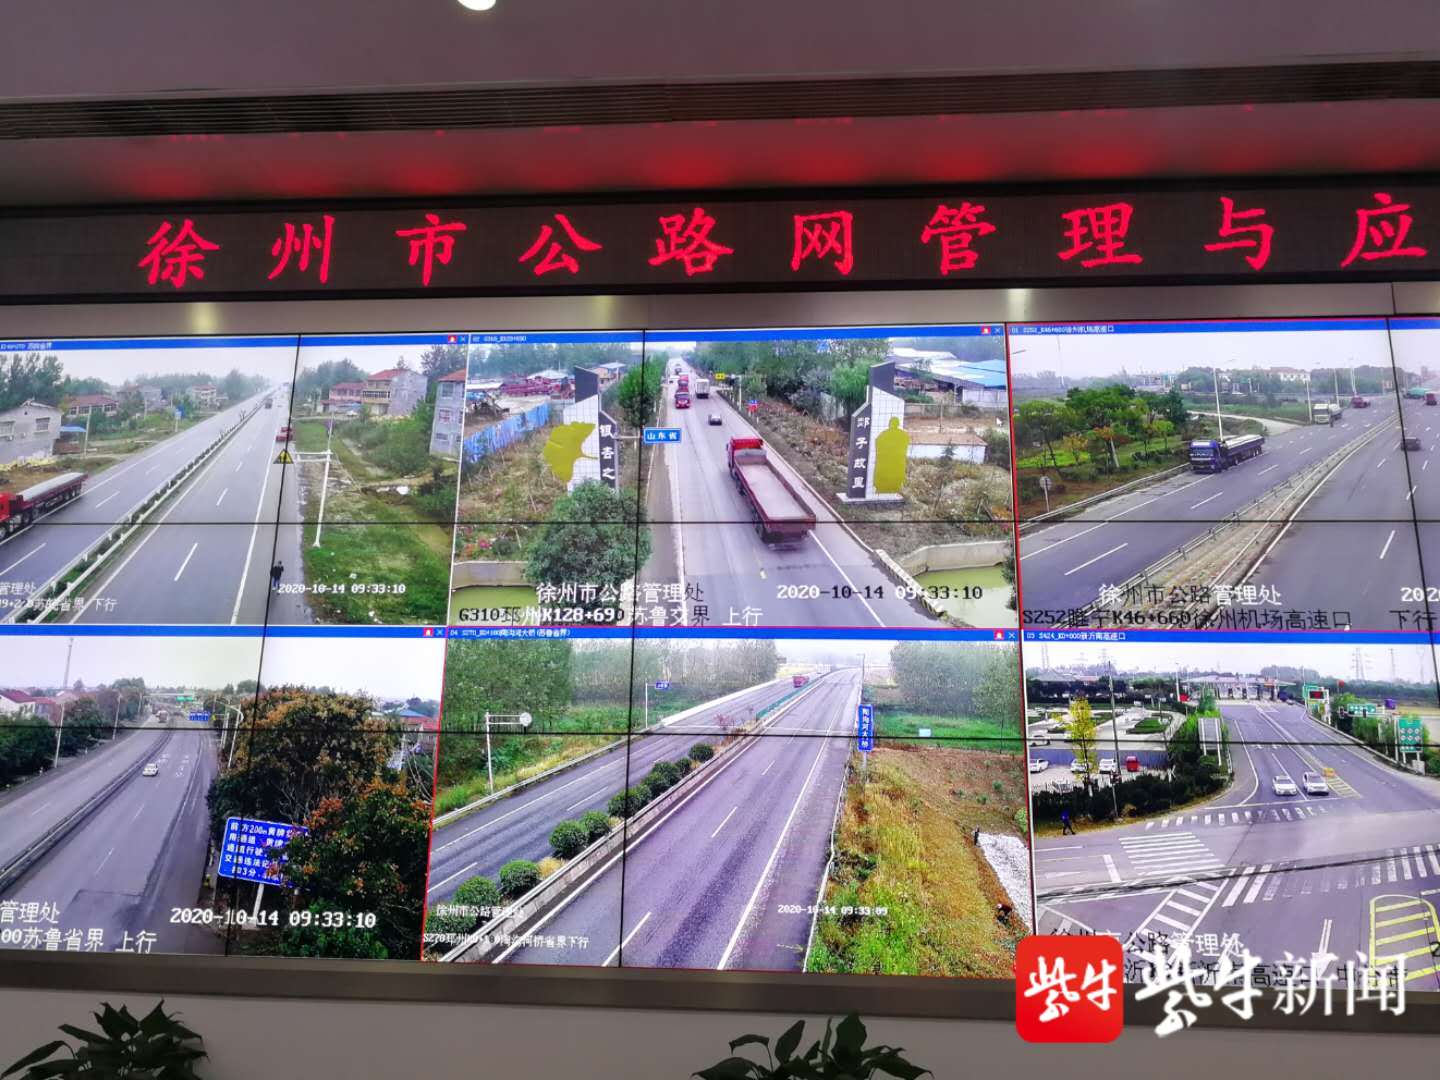 各重要道路交通节点的实时监控画面正在交替显示各主要高速路网的